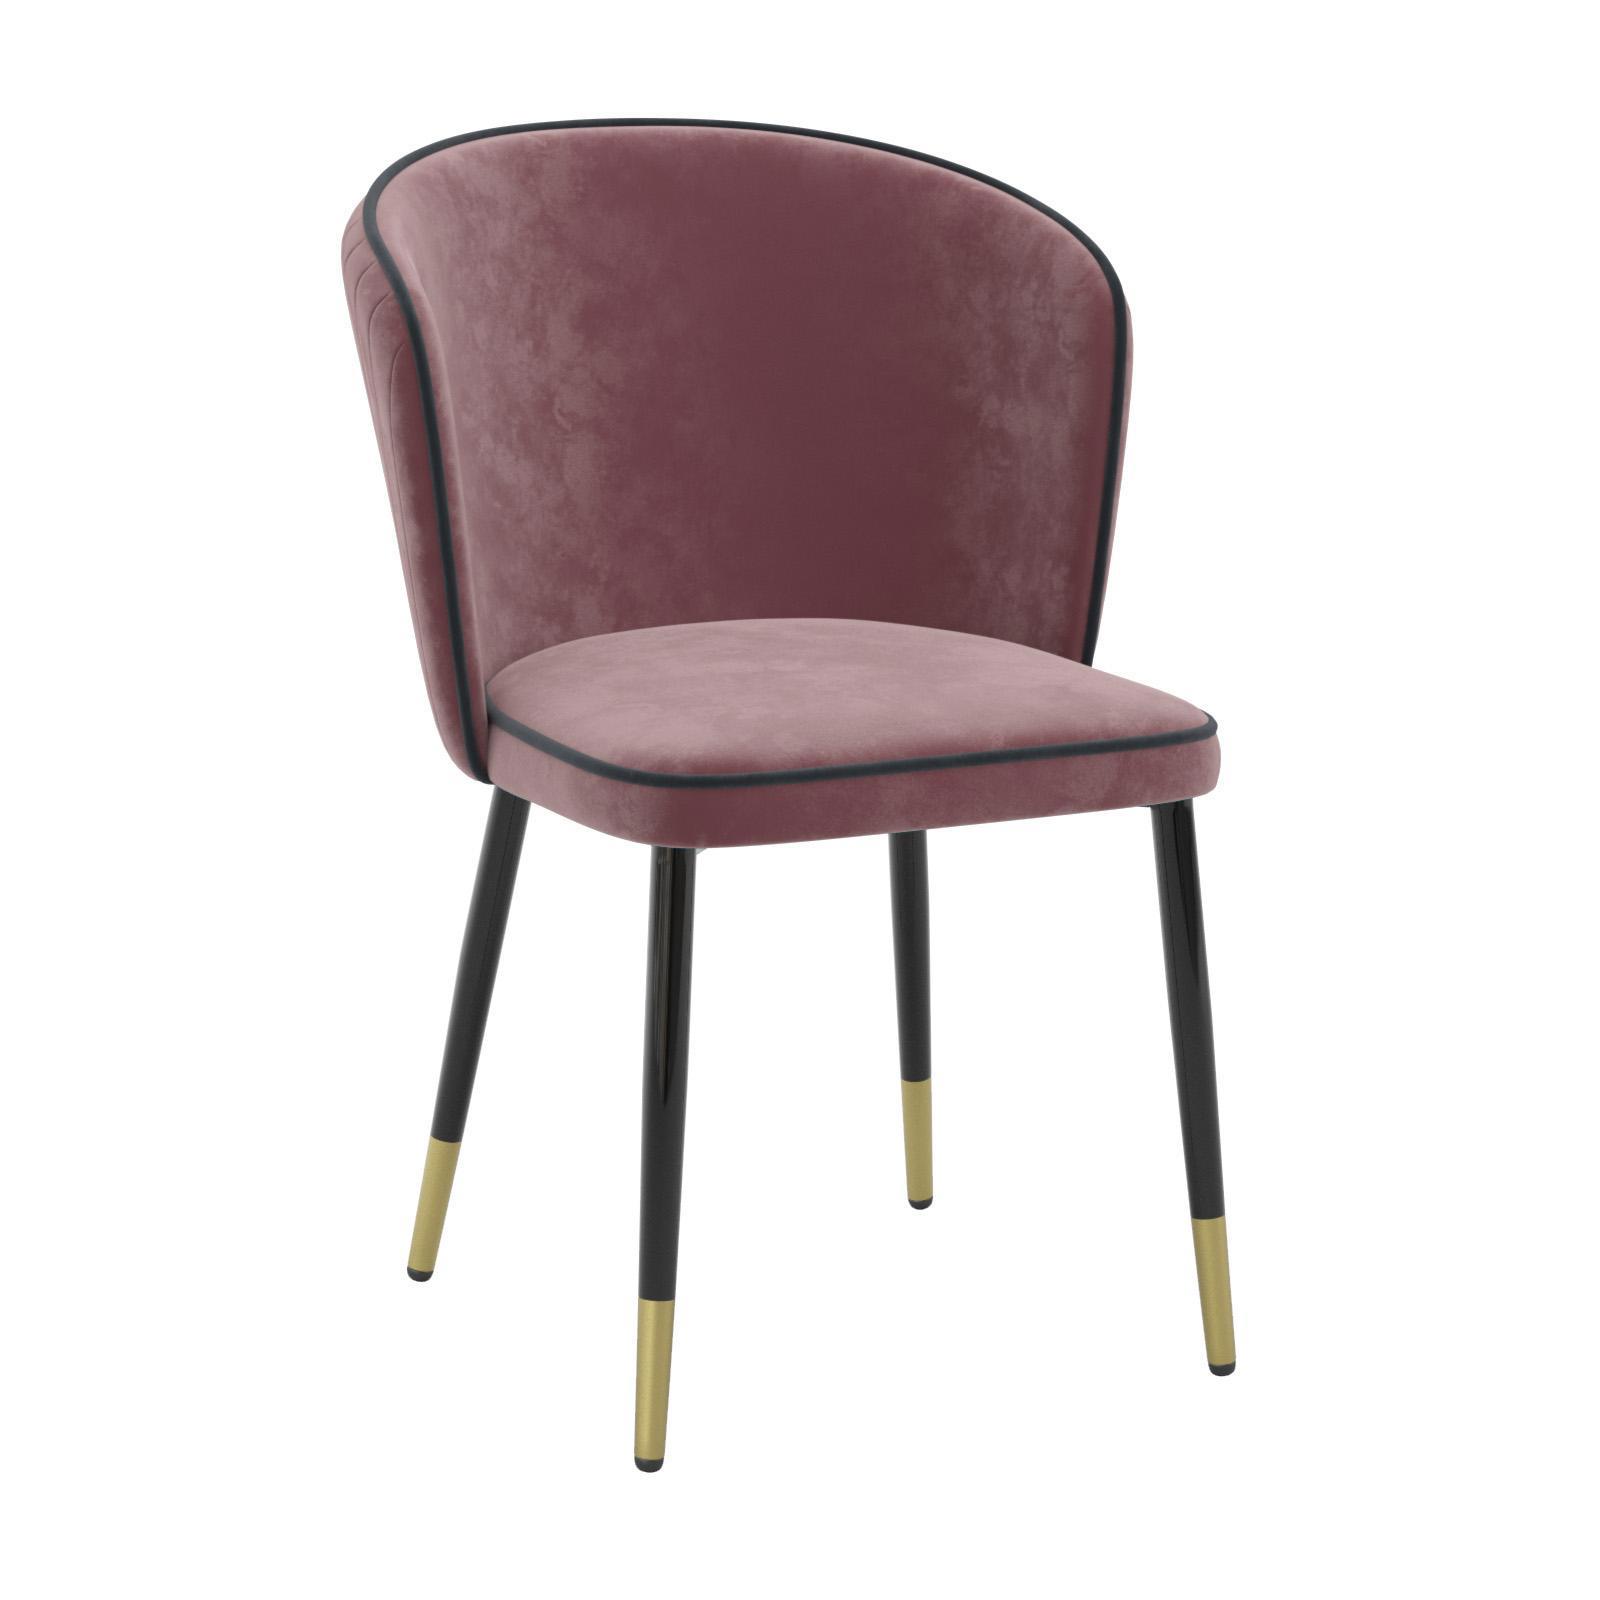 90200440 Кухонный стул мебель для спальни/гостинной цвет брусничный Оникс STLM-0130721 MILAVIO